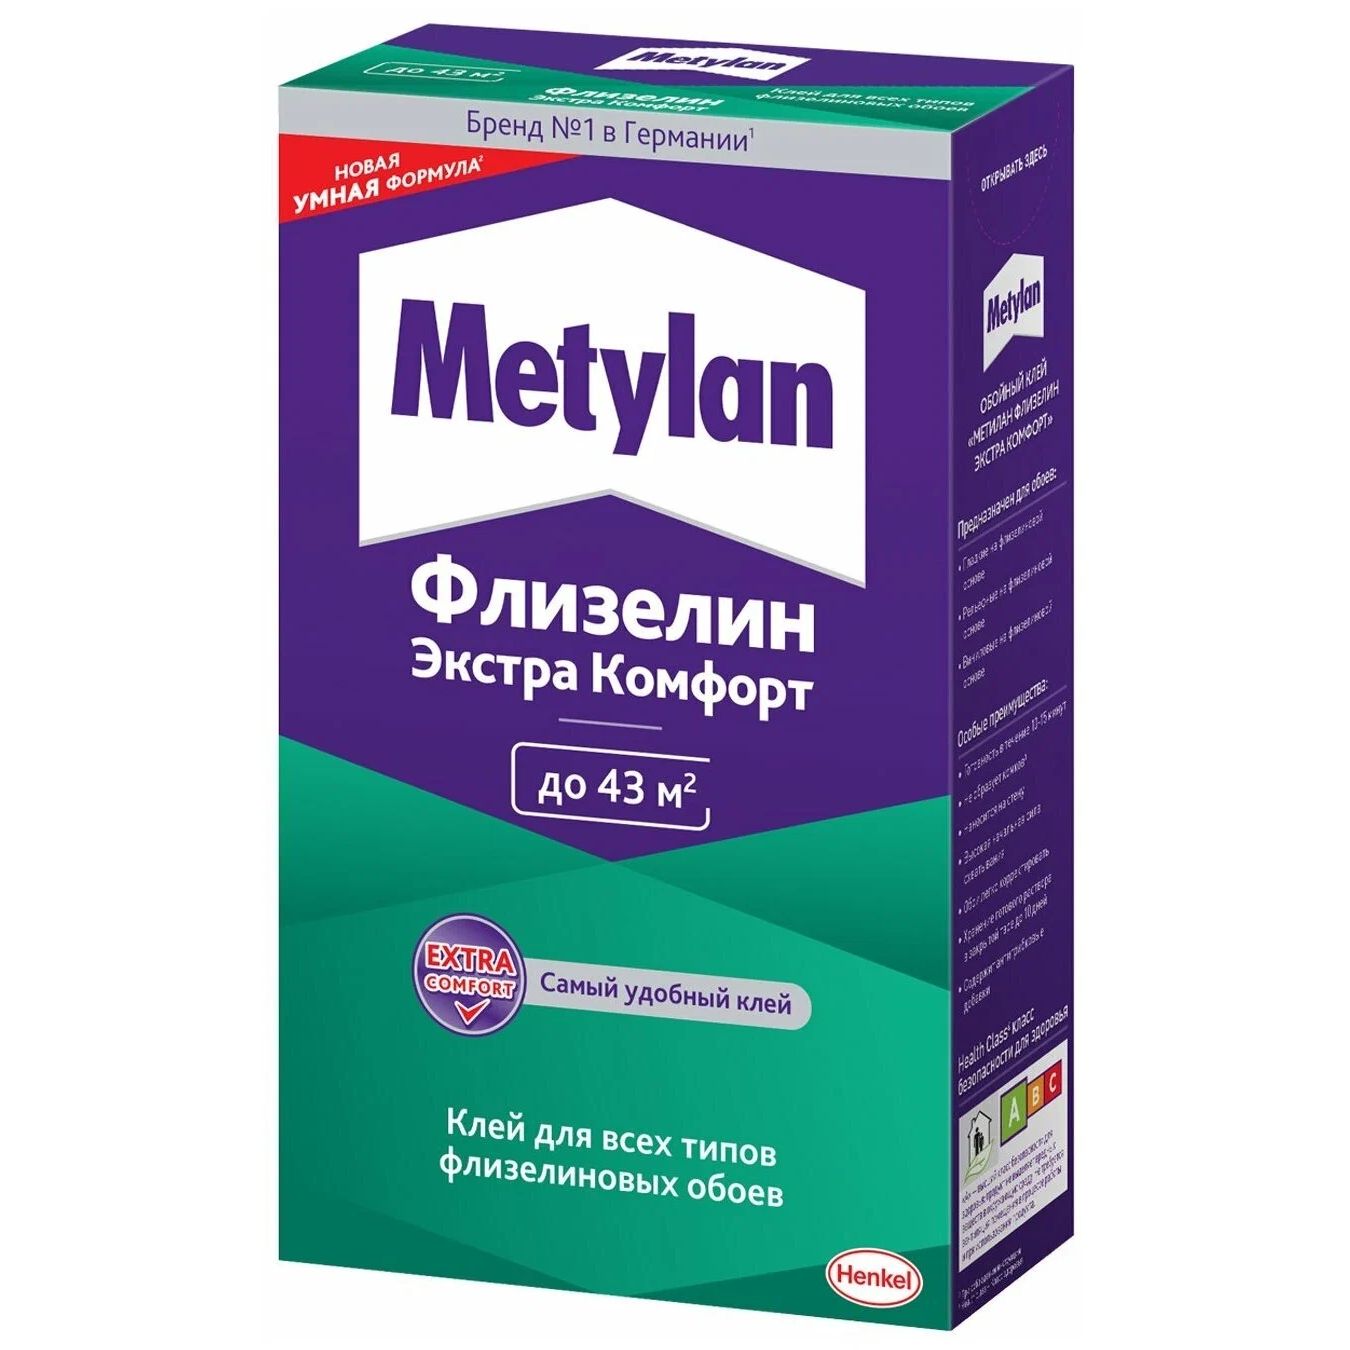 Клей Metylan Флизелин экстра комфорт для всех типов обоев, 300 г смывка всех видов telakka